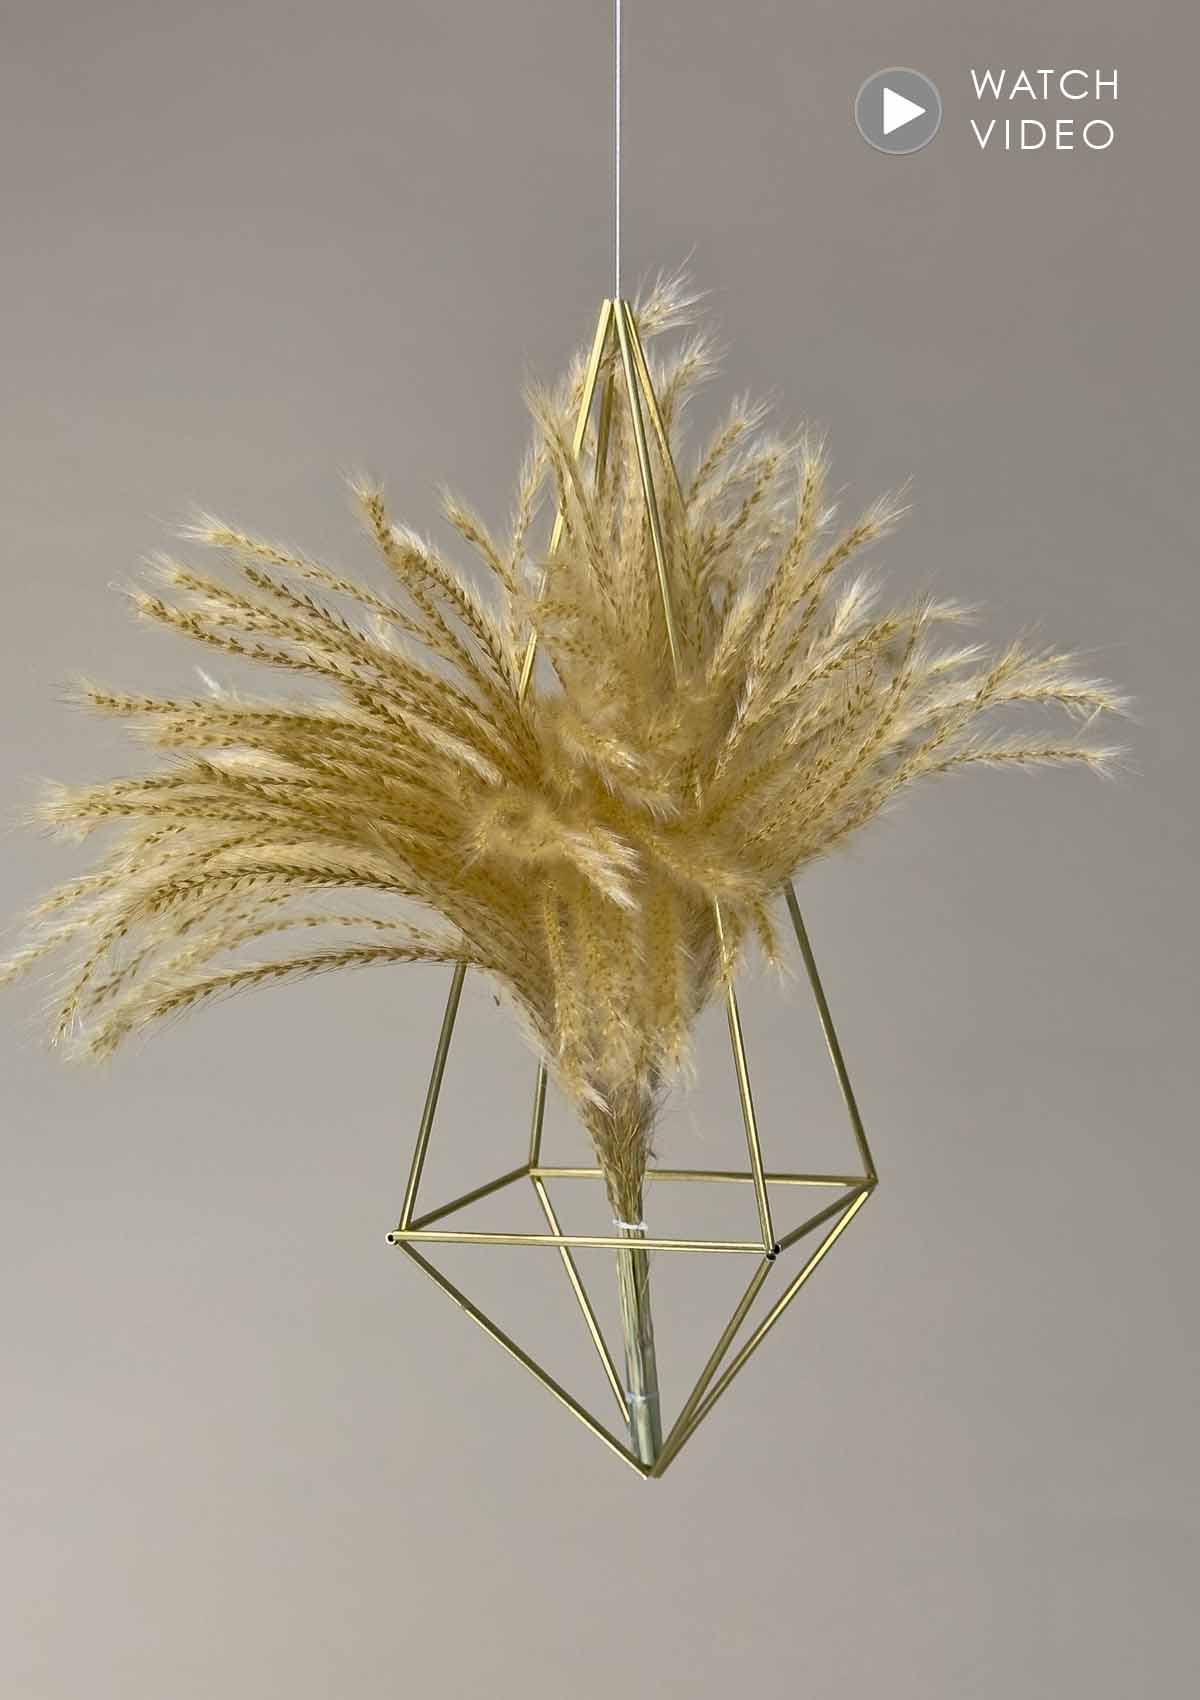 Das „Shiny Grass“ paßt mit seinem goldenen Glanz perfekt zum unserem gold-funkelnden Flower Design Mobile. Dieses Flower Mobile, Medium eignet sich toll als einzelnes Deko-Objekt, aber auch besonders schön in Kombination mit weiteren Mobiles z.B. der größeren Large-Variante.